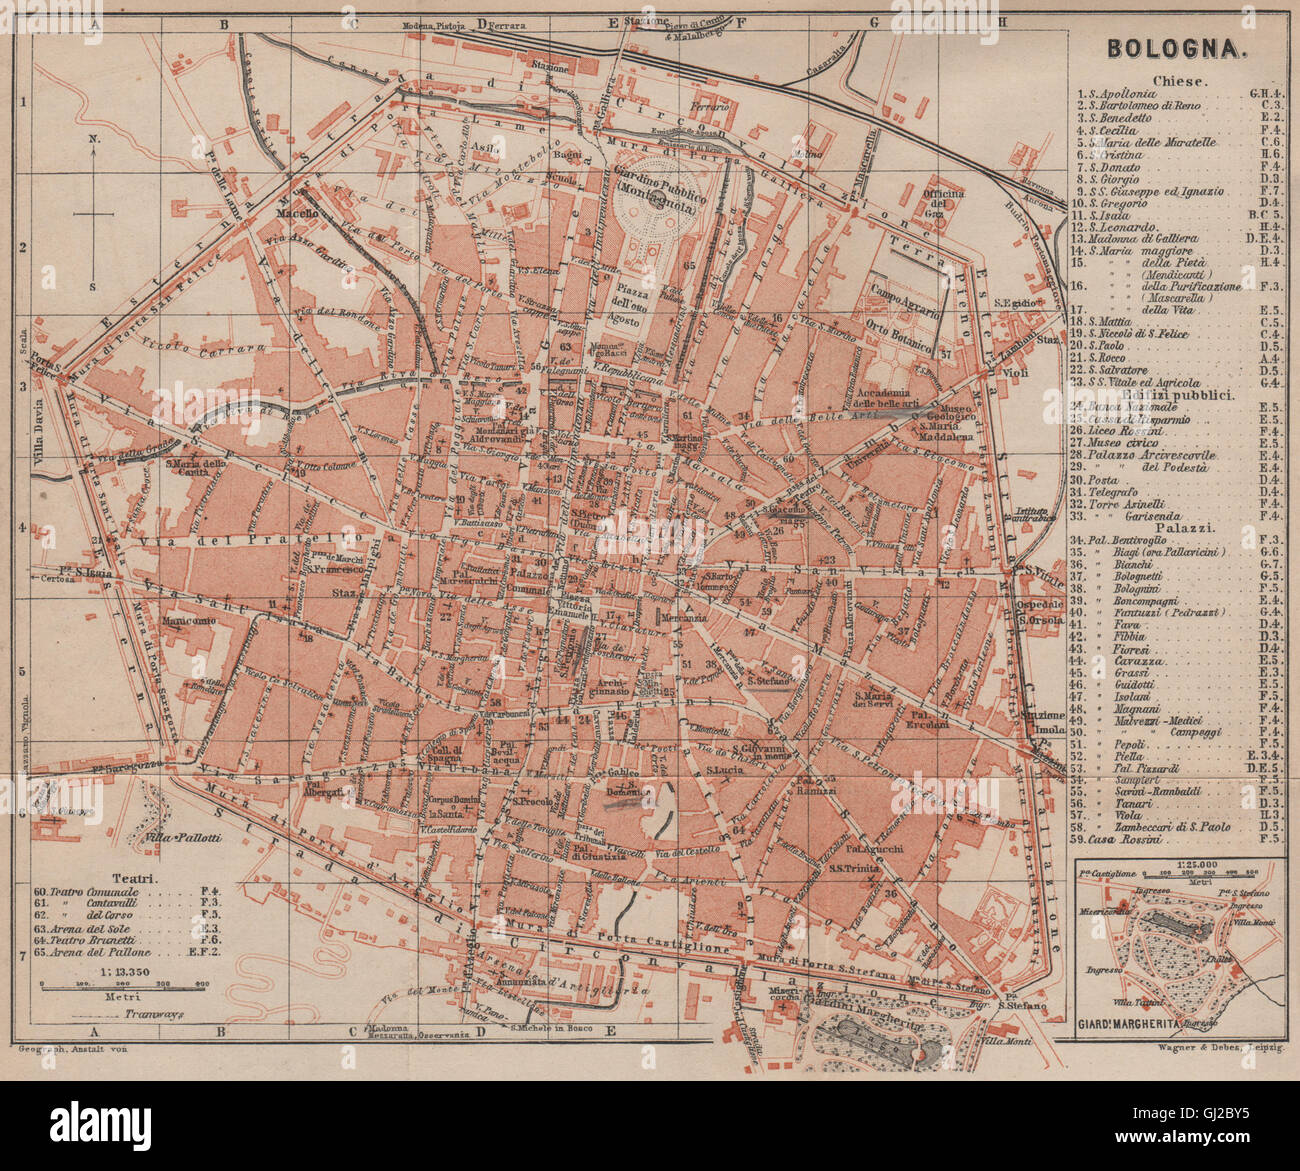 Bolonia ciudad antiguo plan urbanistico de piano. Italia mappa, 1899  Fotografía de stock - Alamy